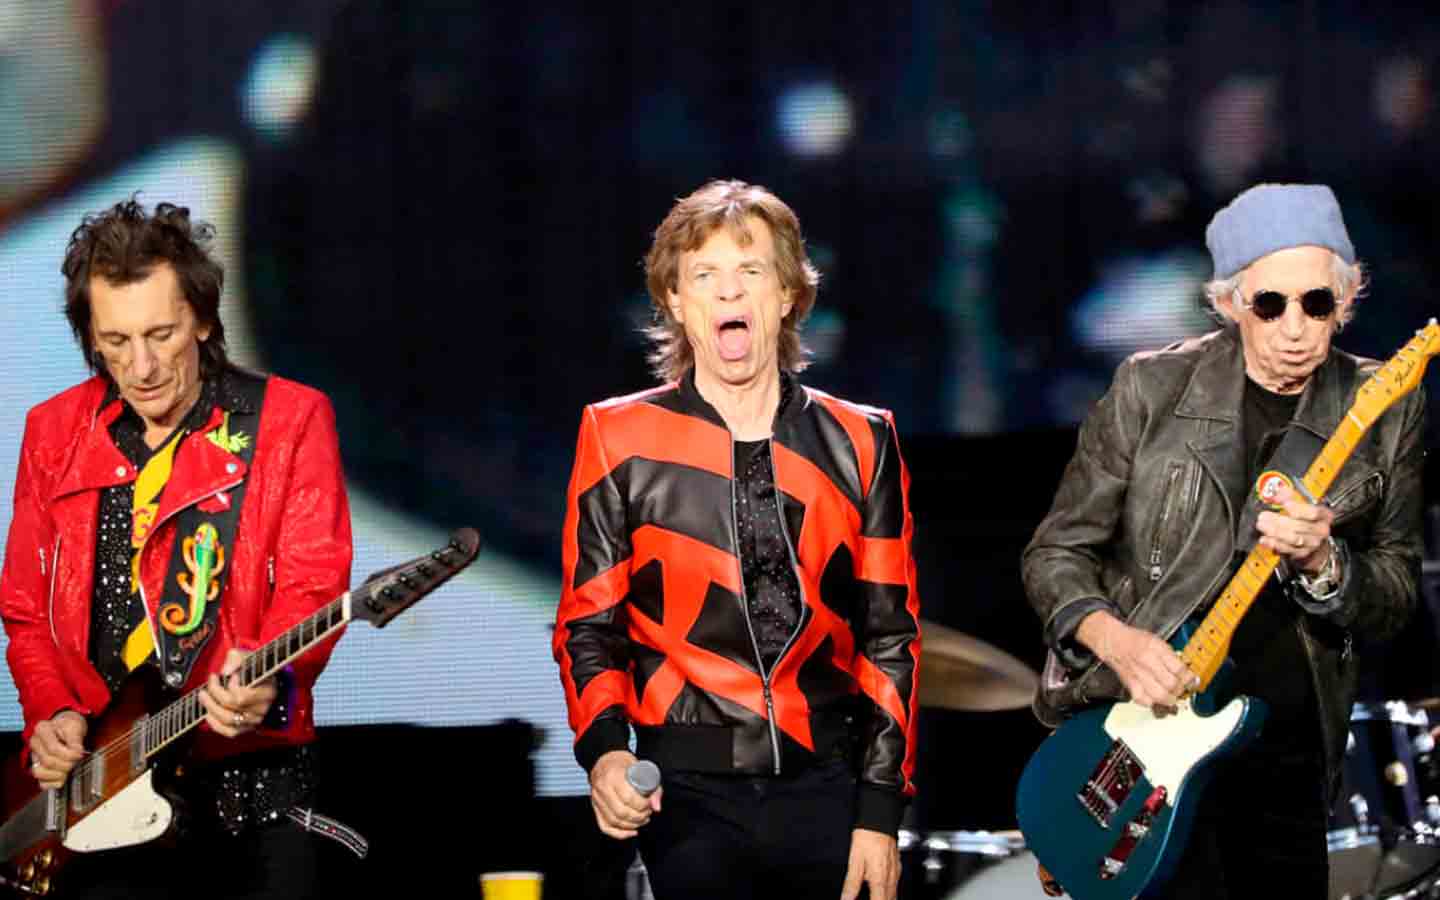 Nuevo del adelanto del próximo álbum de The Rolling Stones